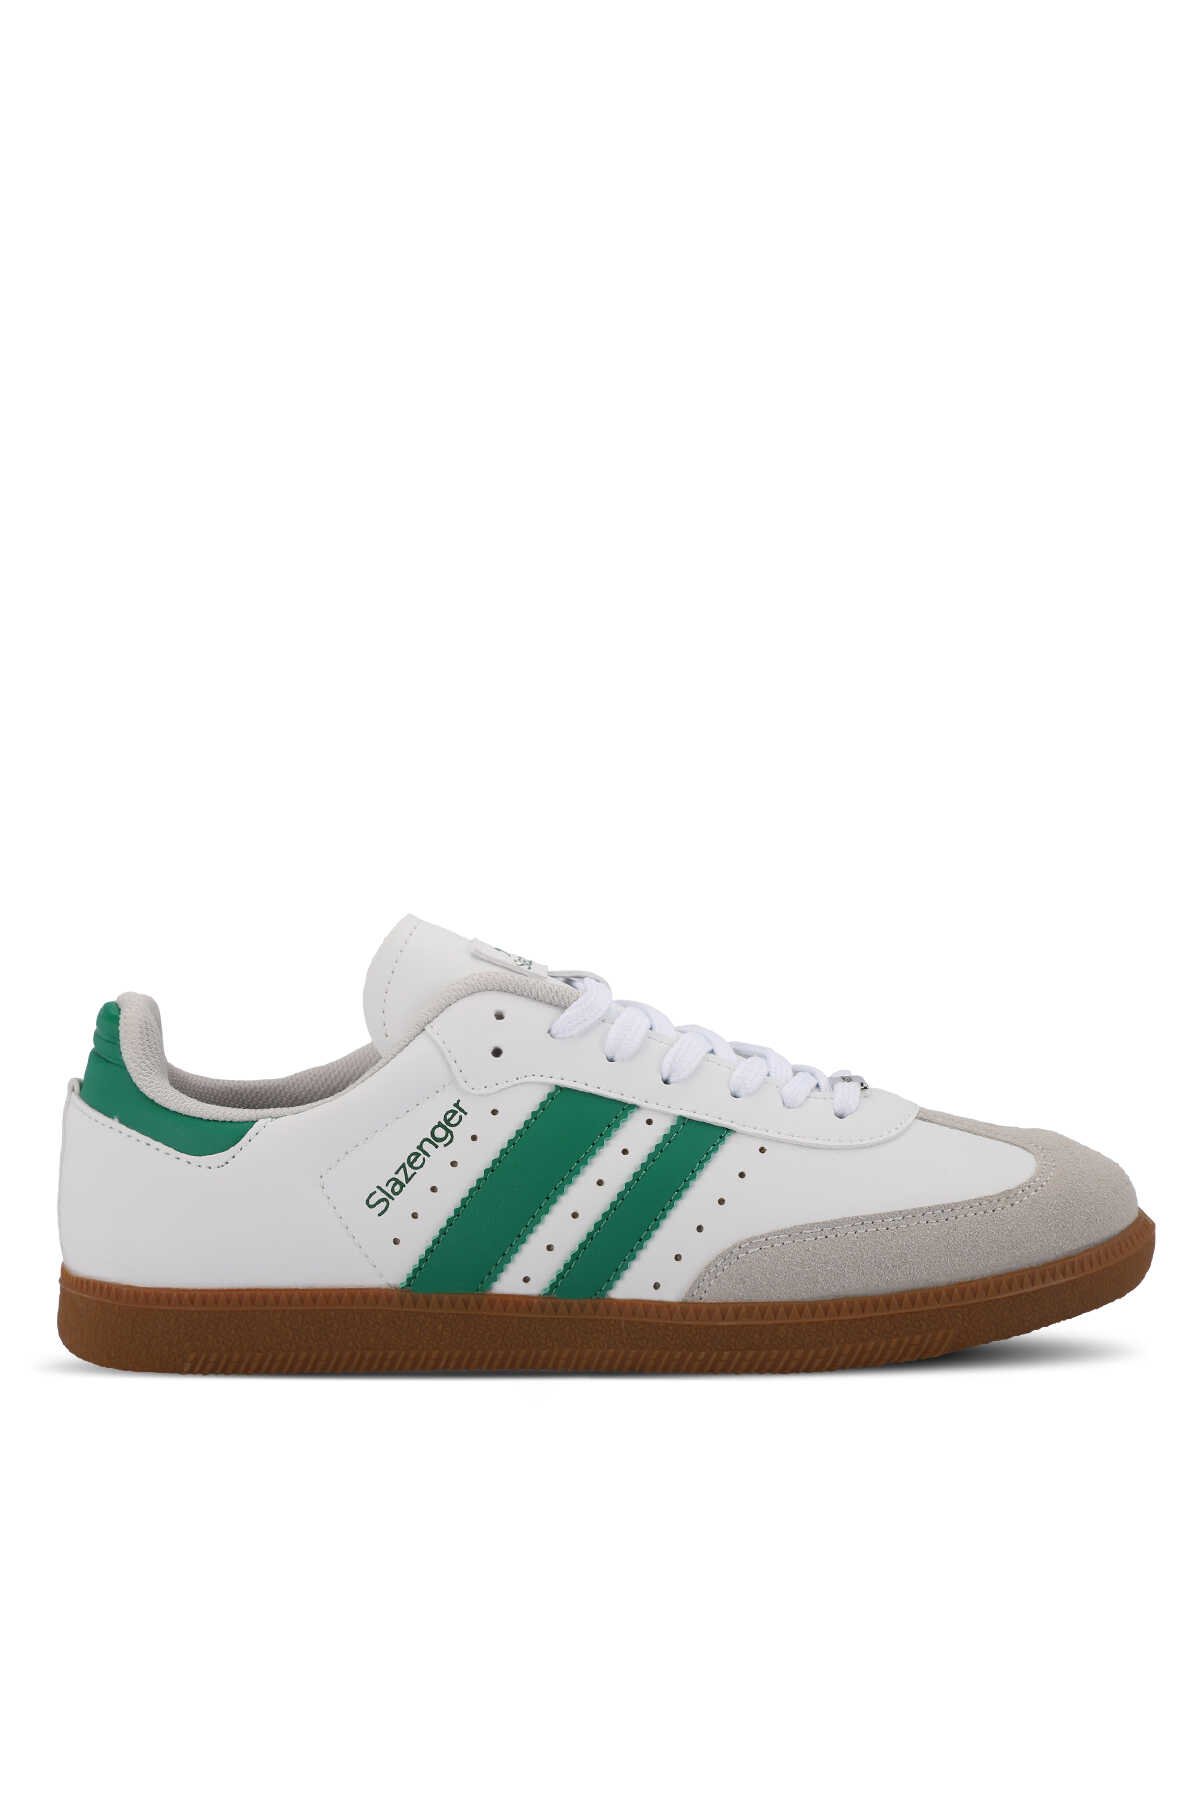 Slazenger - Slazenger PING Erkek Sneaker Ayakkabı Beyaz / Yeşil